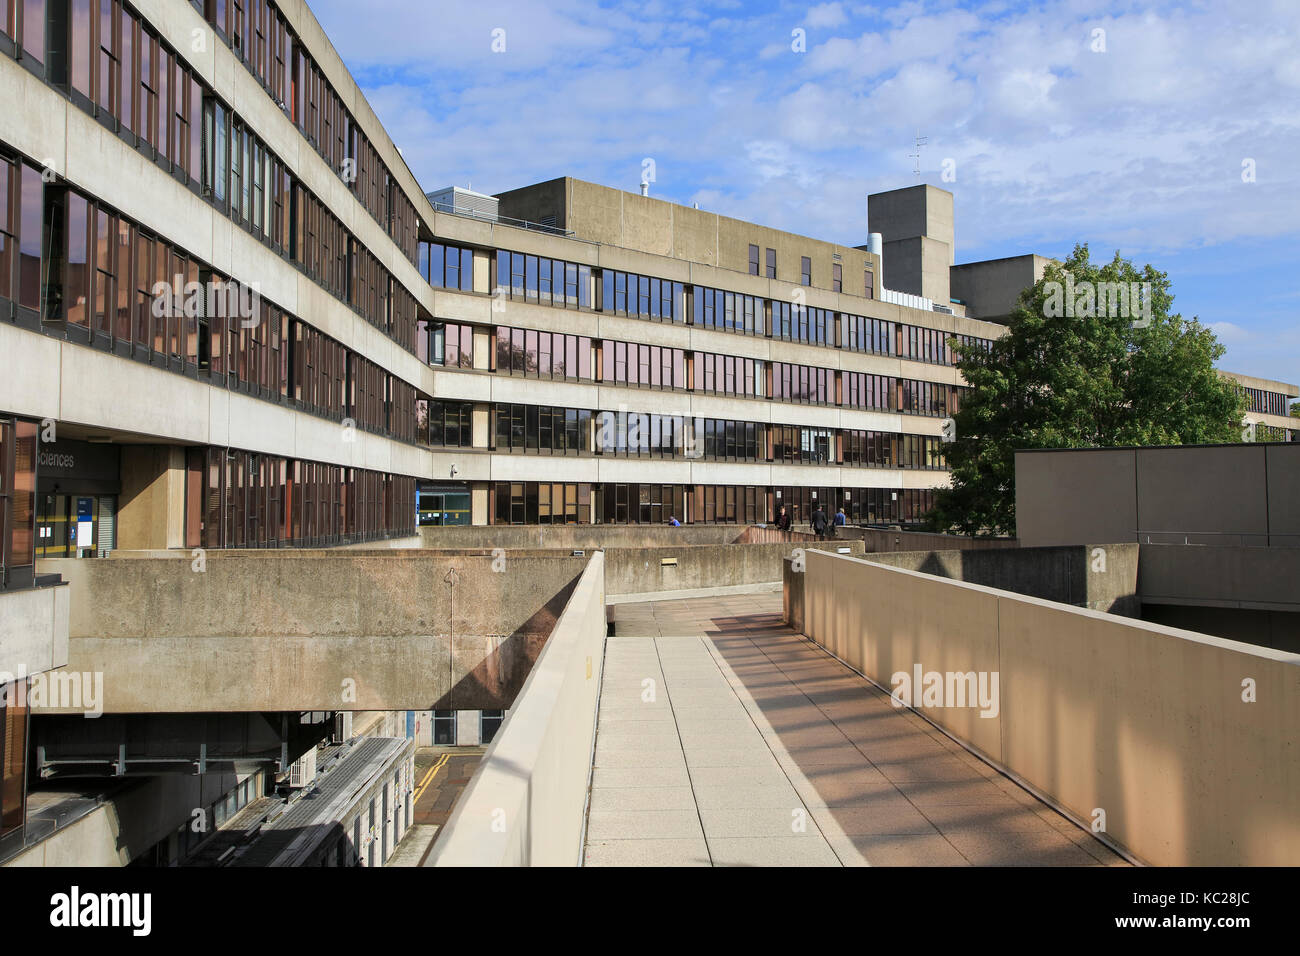 Les bâtiments d'architecture moderne campus de l'Université d'East Anglia, Norwich, Norfolk, England, UK Banque D'Images